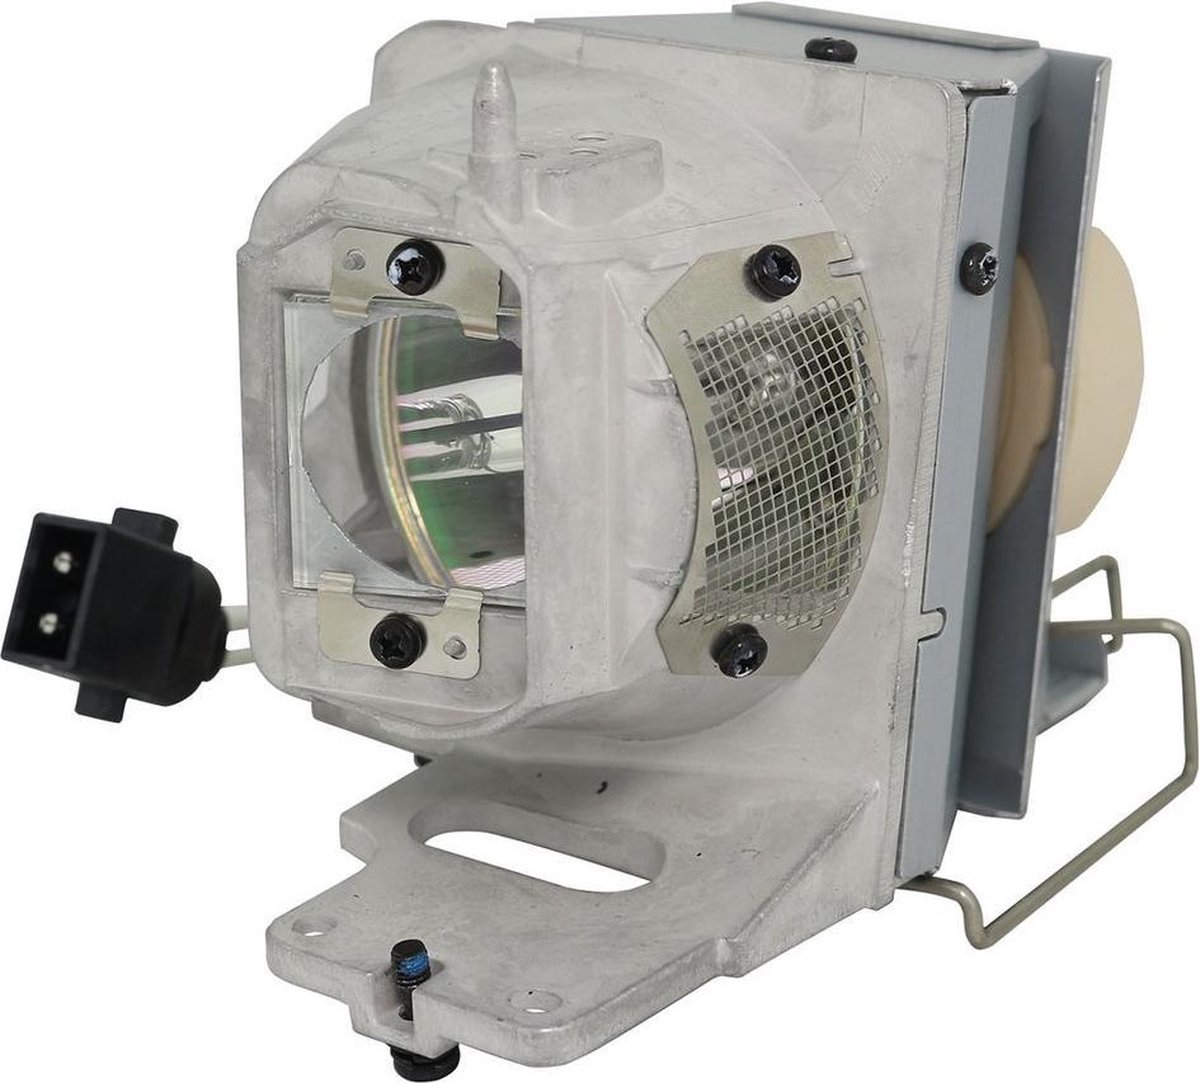 Beamerlamp geschikt voor de OPTOMA UHD50X beamer, lamp code BL-FU240E / SP.7G6R1GR01. Bevat originele UHP lamp, prestaties gelijk aan origineel.